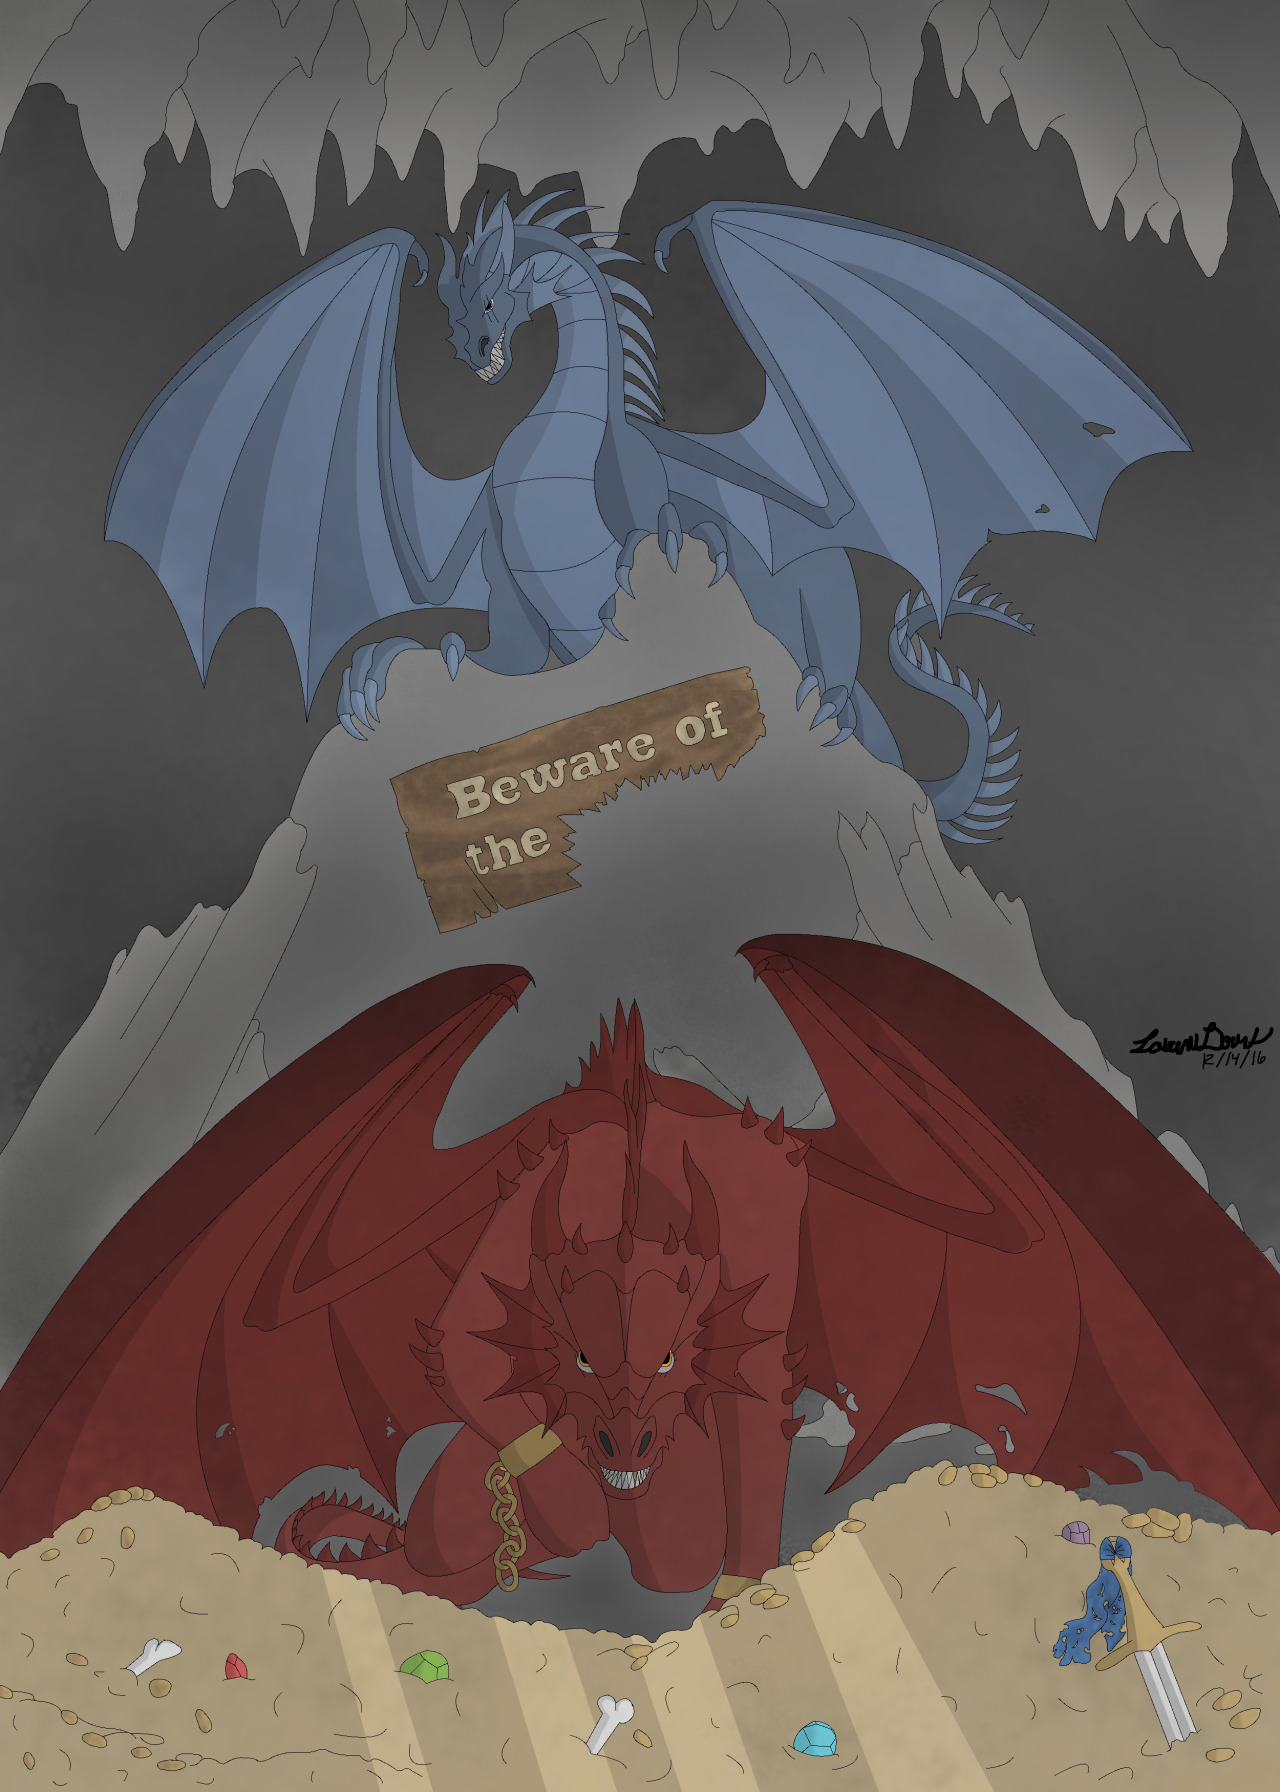 you dare wake the dragon